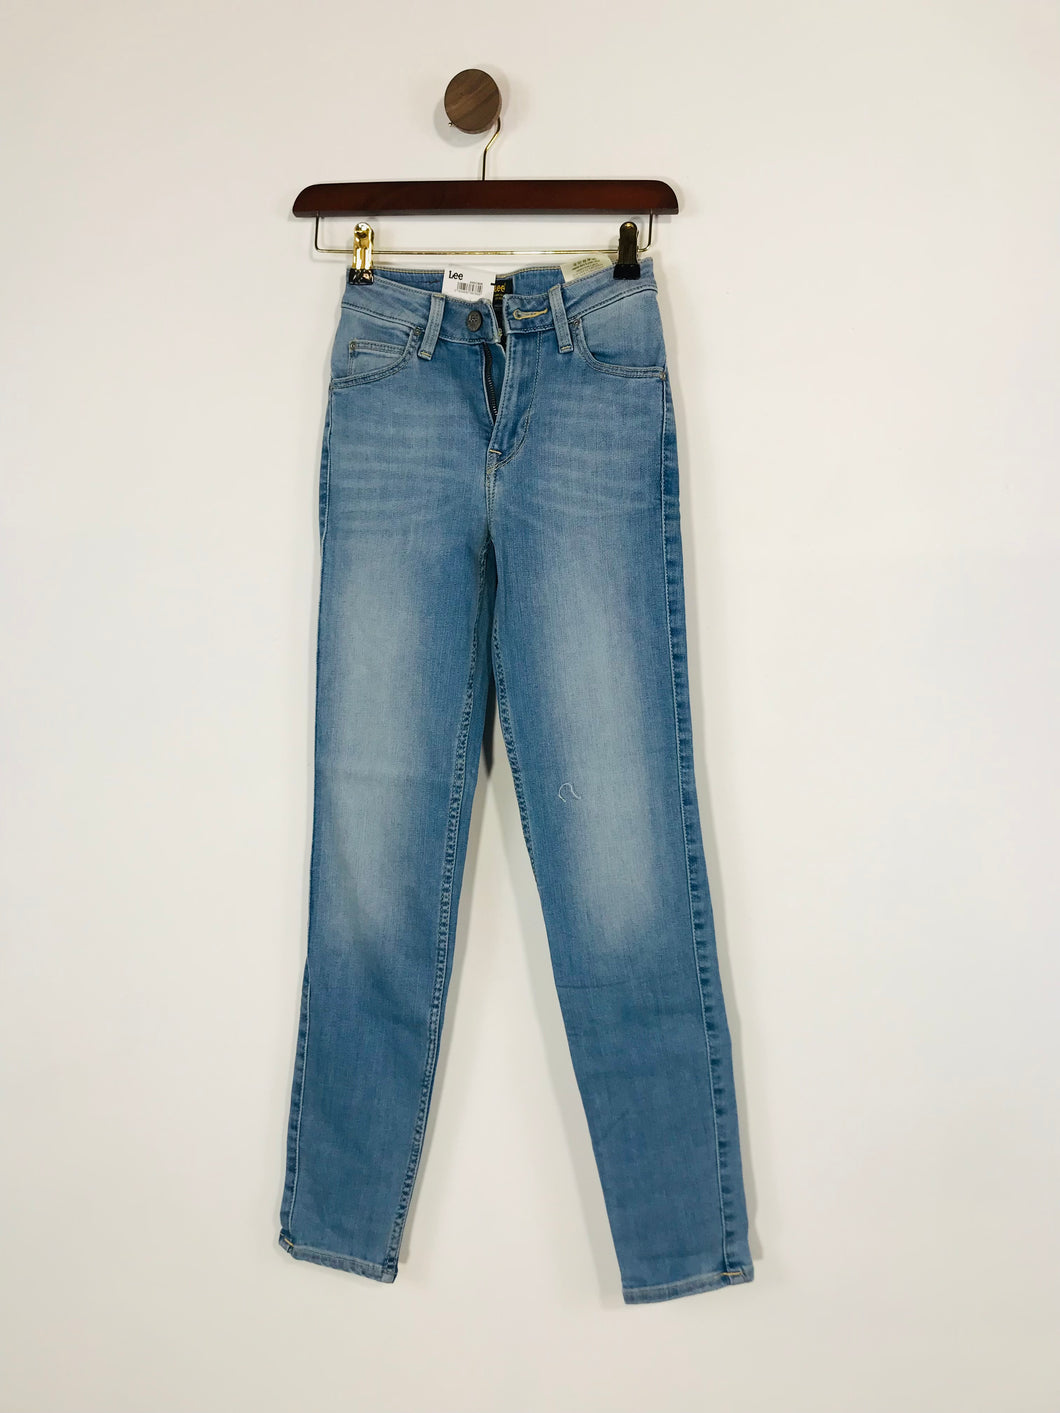 Lee Women's Scarlett High Skinny Jeggings Jeans NWT | 24 L31 UK6 | Blue